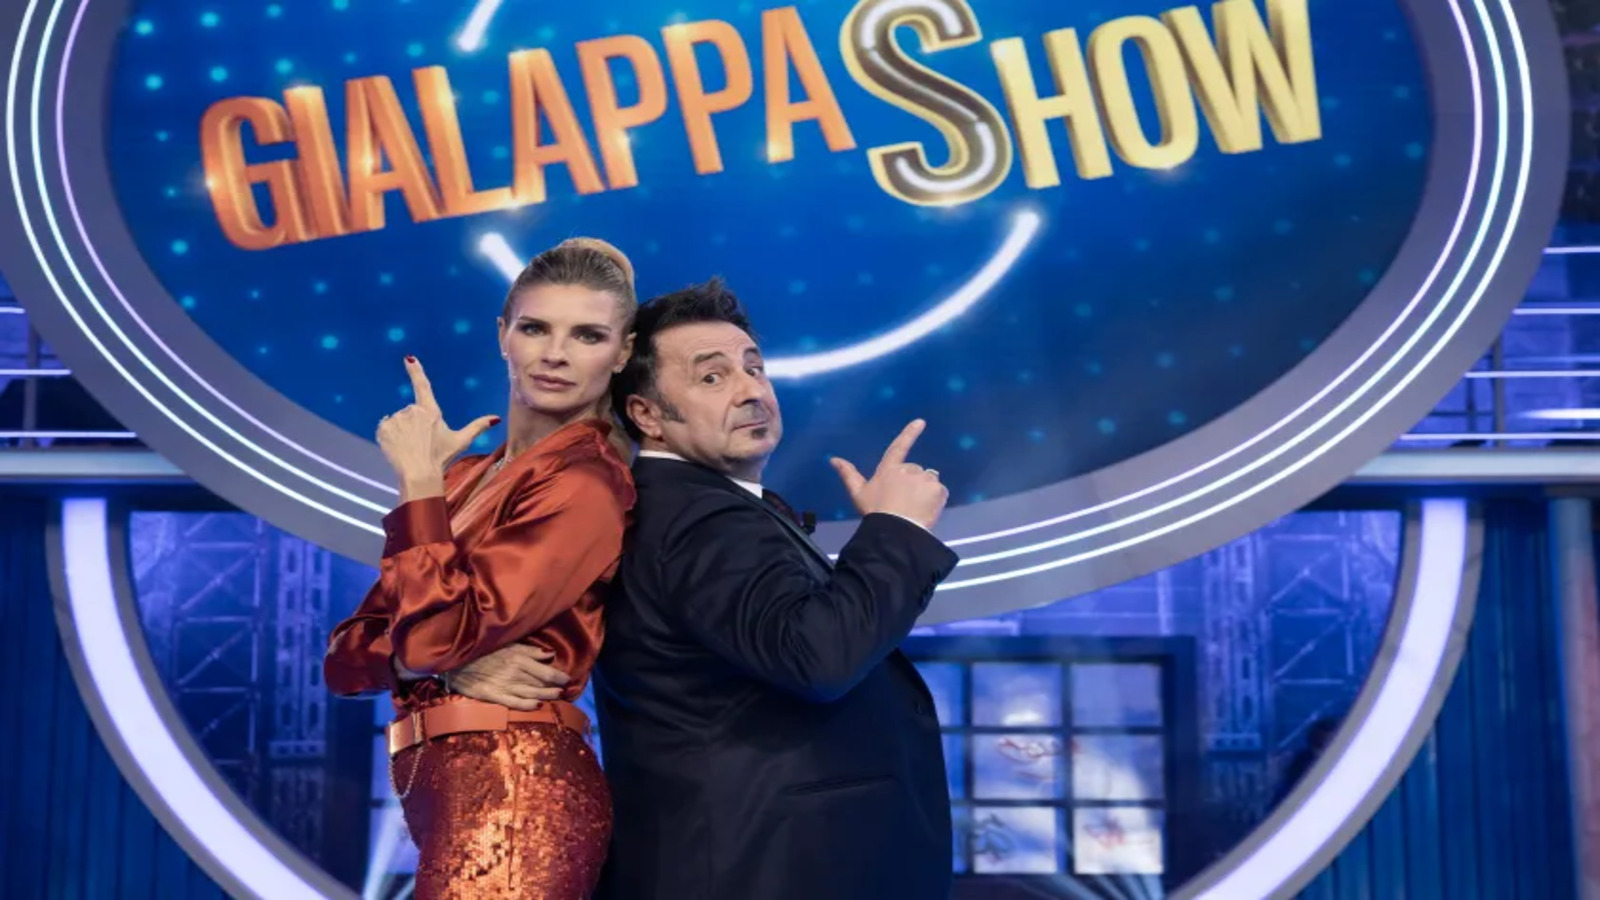 Gialappashow stasera su TV8: anticipazioni, presentatrice, cast e ospiti del 21 novembre